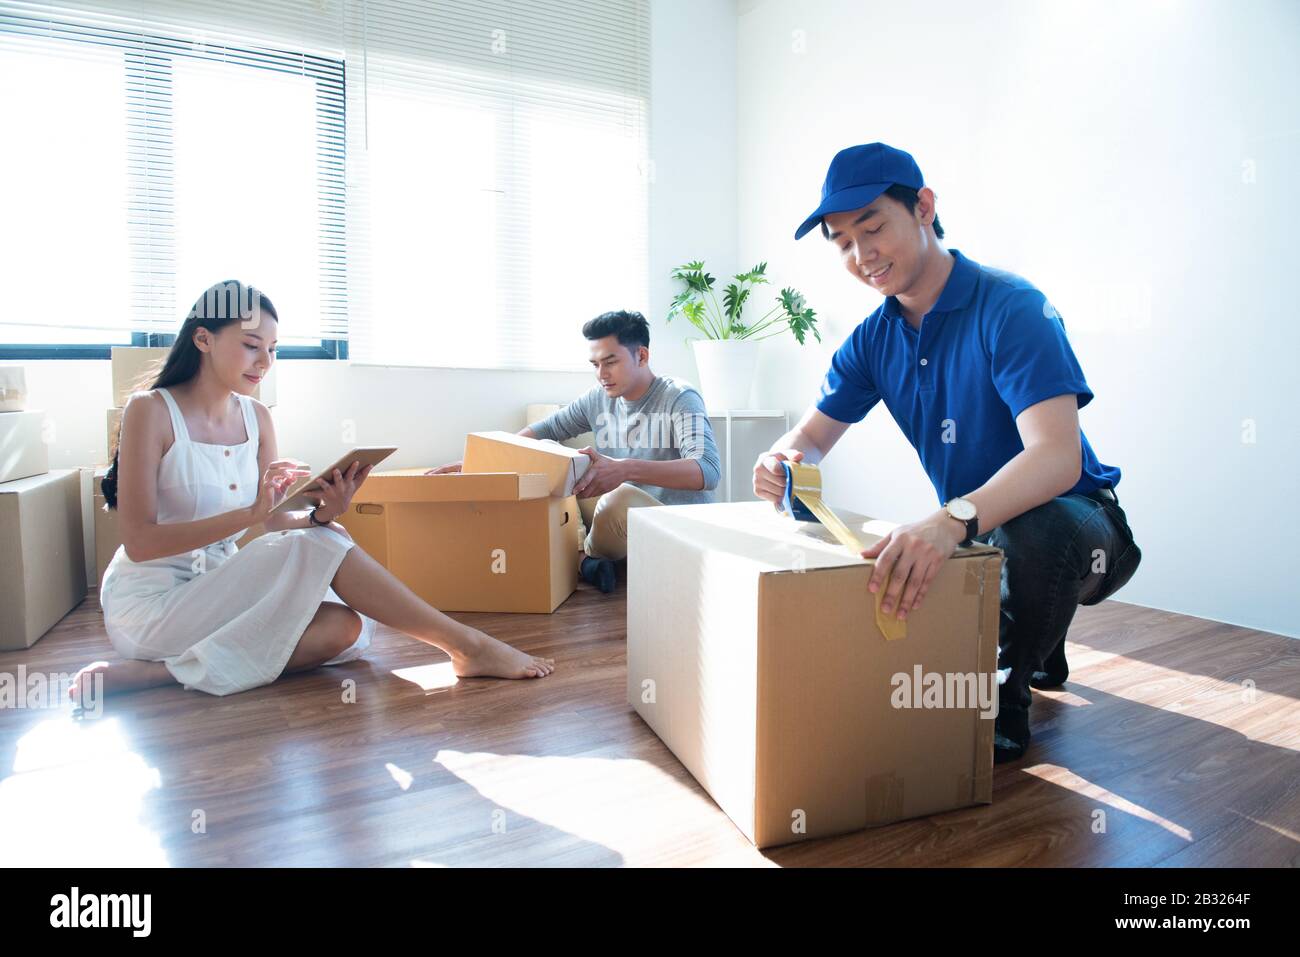 Der Mann des Lieferdienstes in blauer Uniform hilft dem glücklichen Paar Kunden, das Paket mit Klebeband im Haus des Kunden verpackt.Frau mit Tablettenunterschrift Stockfoto